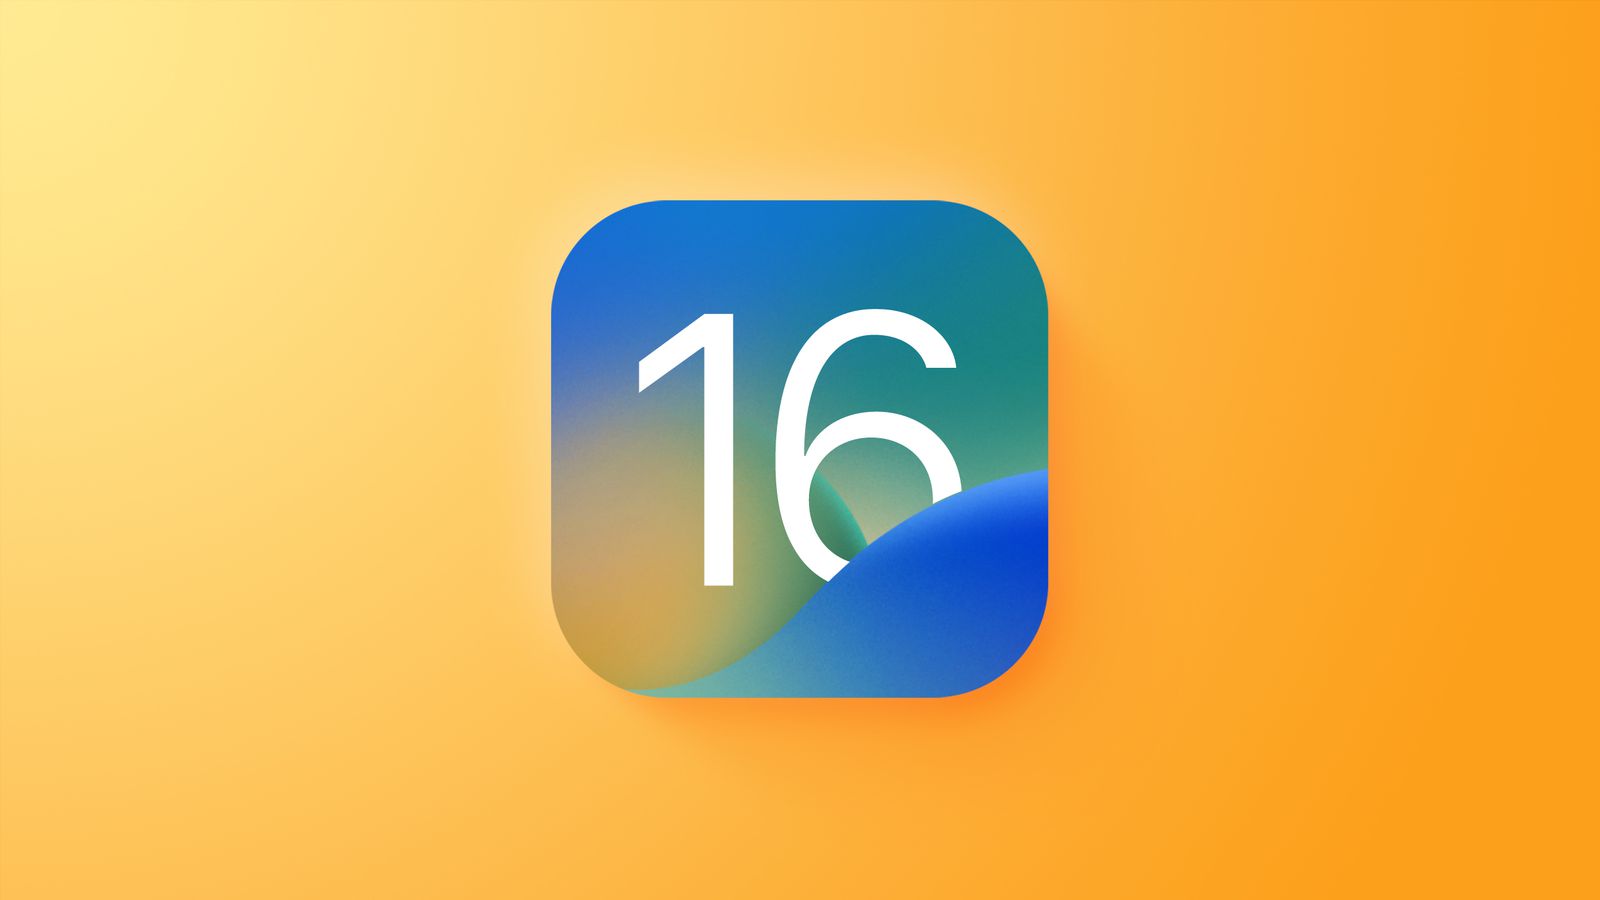 Apple сообщила о скором выходе обновления iOS 16 с исправлением проблемы, связанной с рекламой